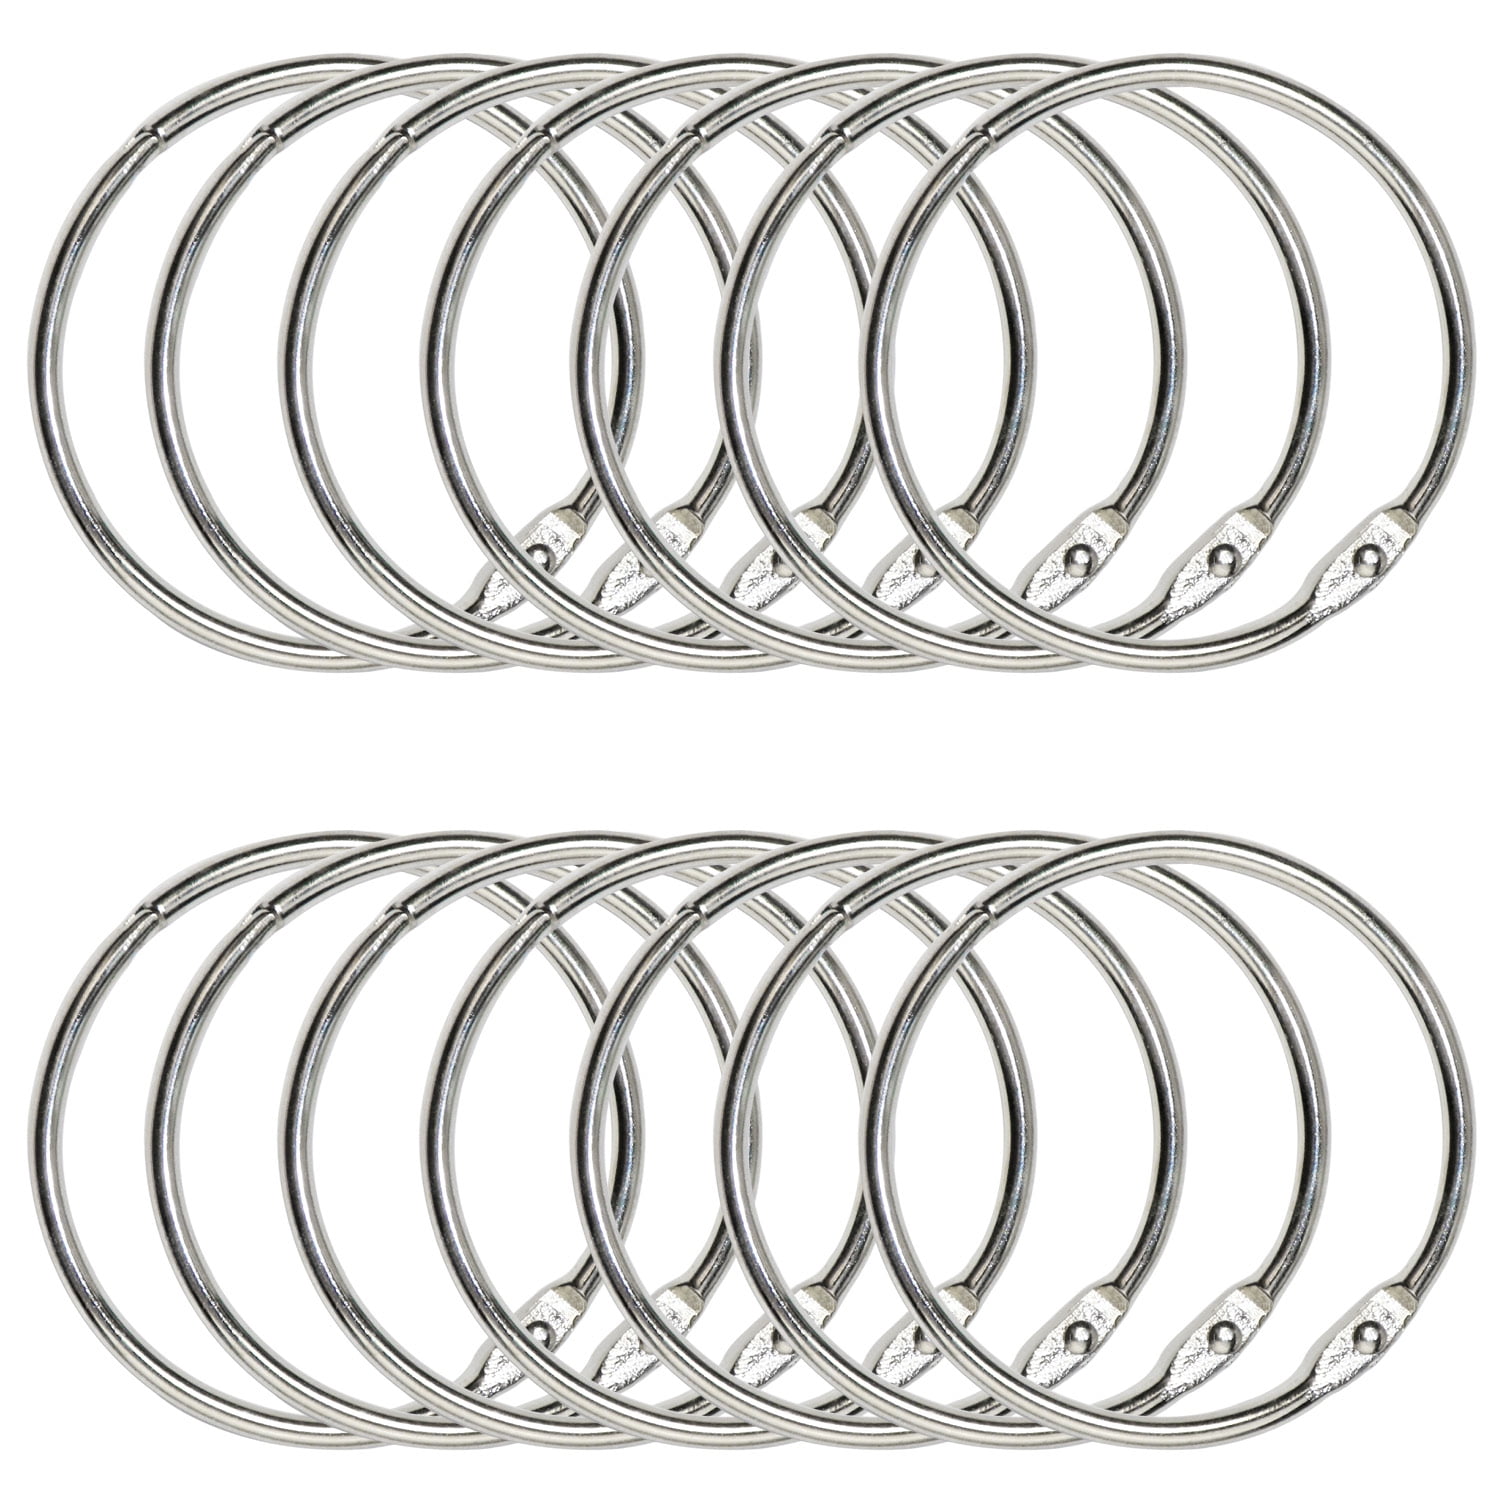 10 Pcs 2 inch/ 30 Pcs 1.5 inch Office Metal Book Rings Nickel Plated Steel Binder Rings for School Home 40 PCS Loose Leaf Binder Rings 